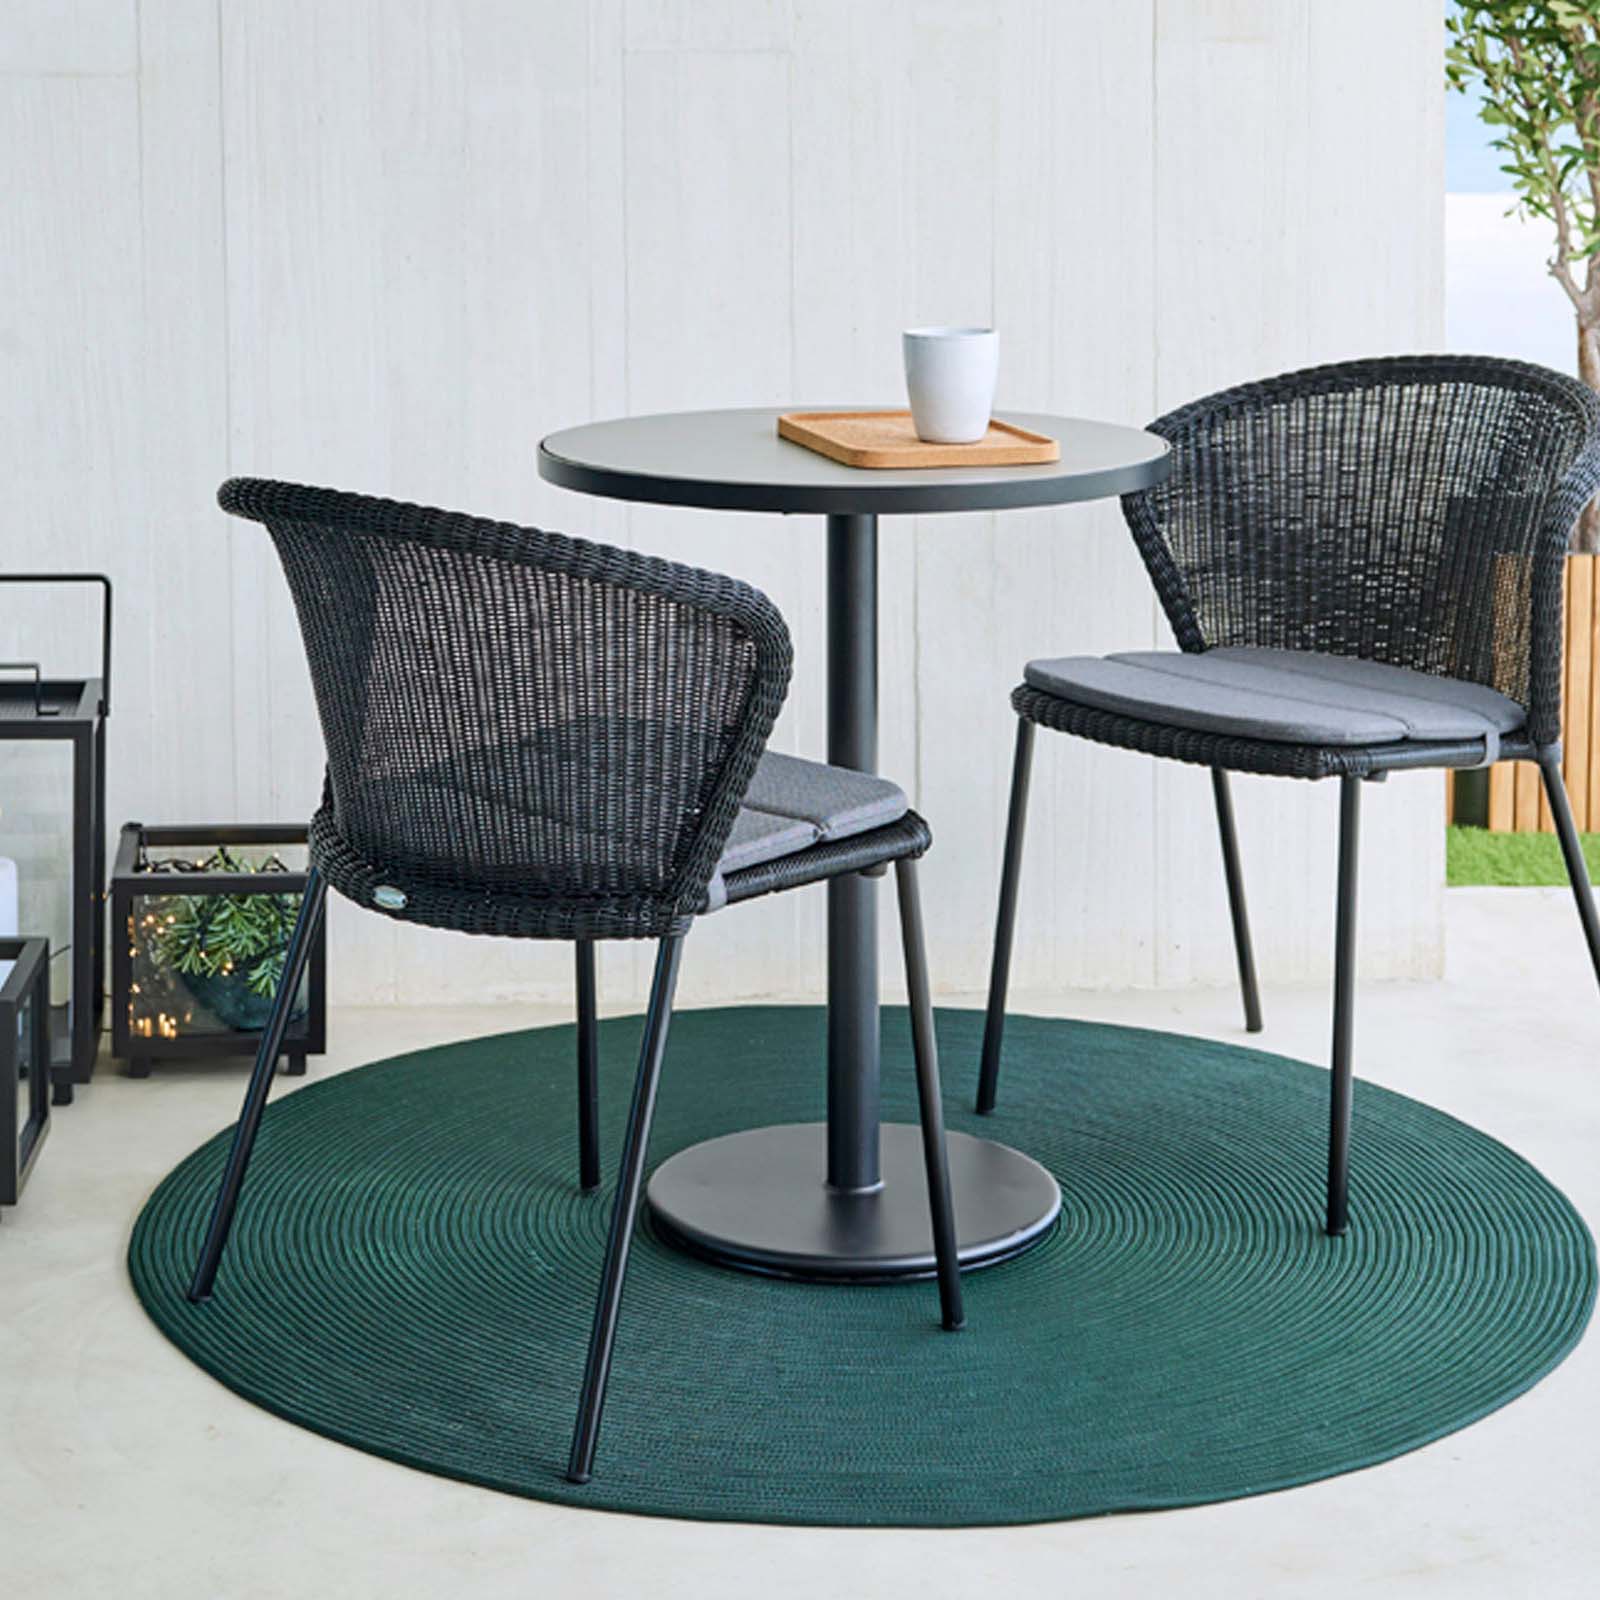 Go café Gestell zum Bistrotisch Durchmesser 60 cm aus Aluminium in Lava Grey mit Tischplatte aus Ceramic in Lava Grey